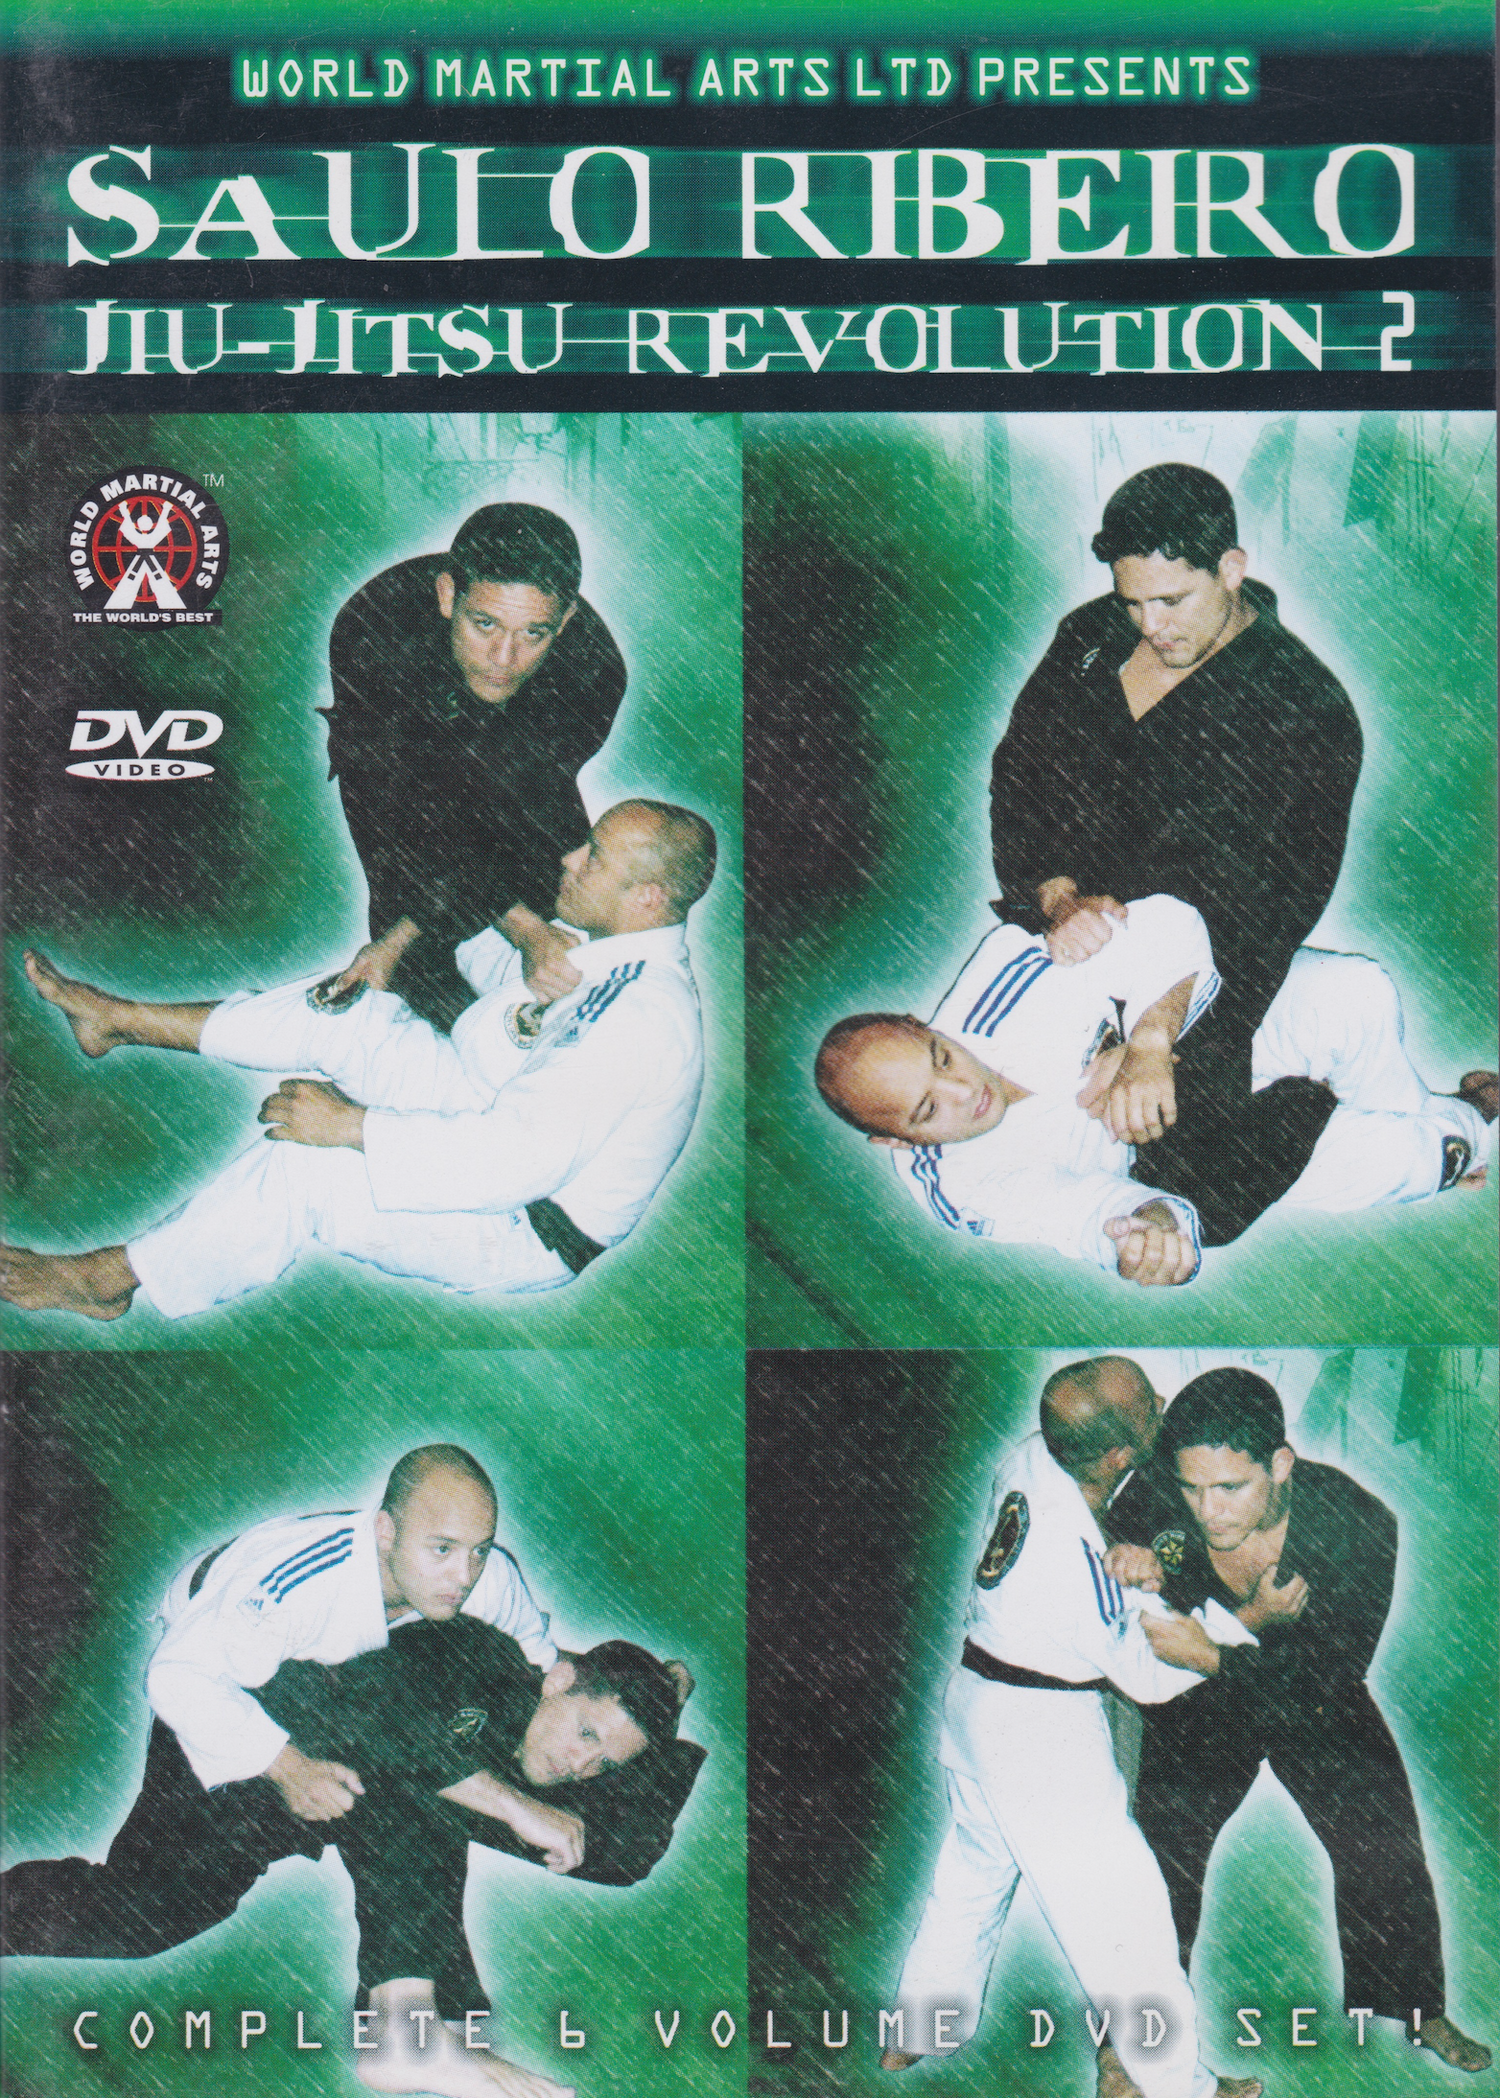 Jiu-Jitsu Revolution 2 (6 DVD Set) by Saulo Ribeiro (Preowned)